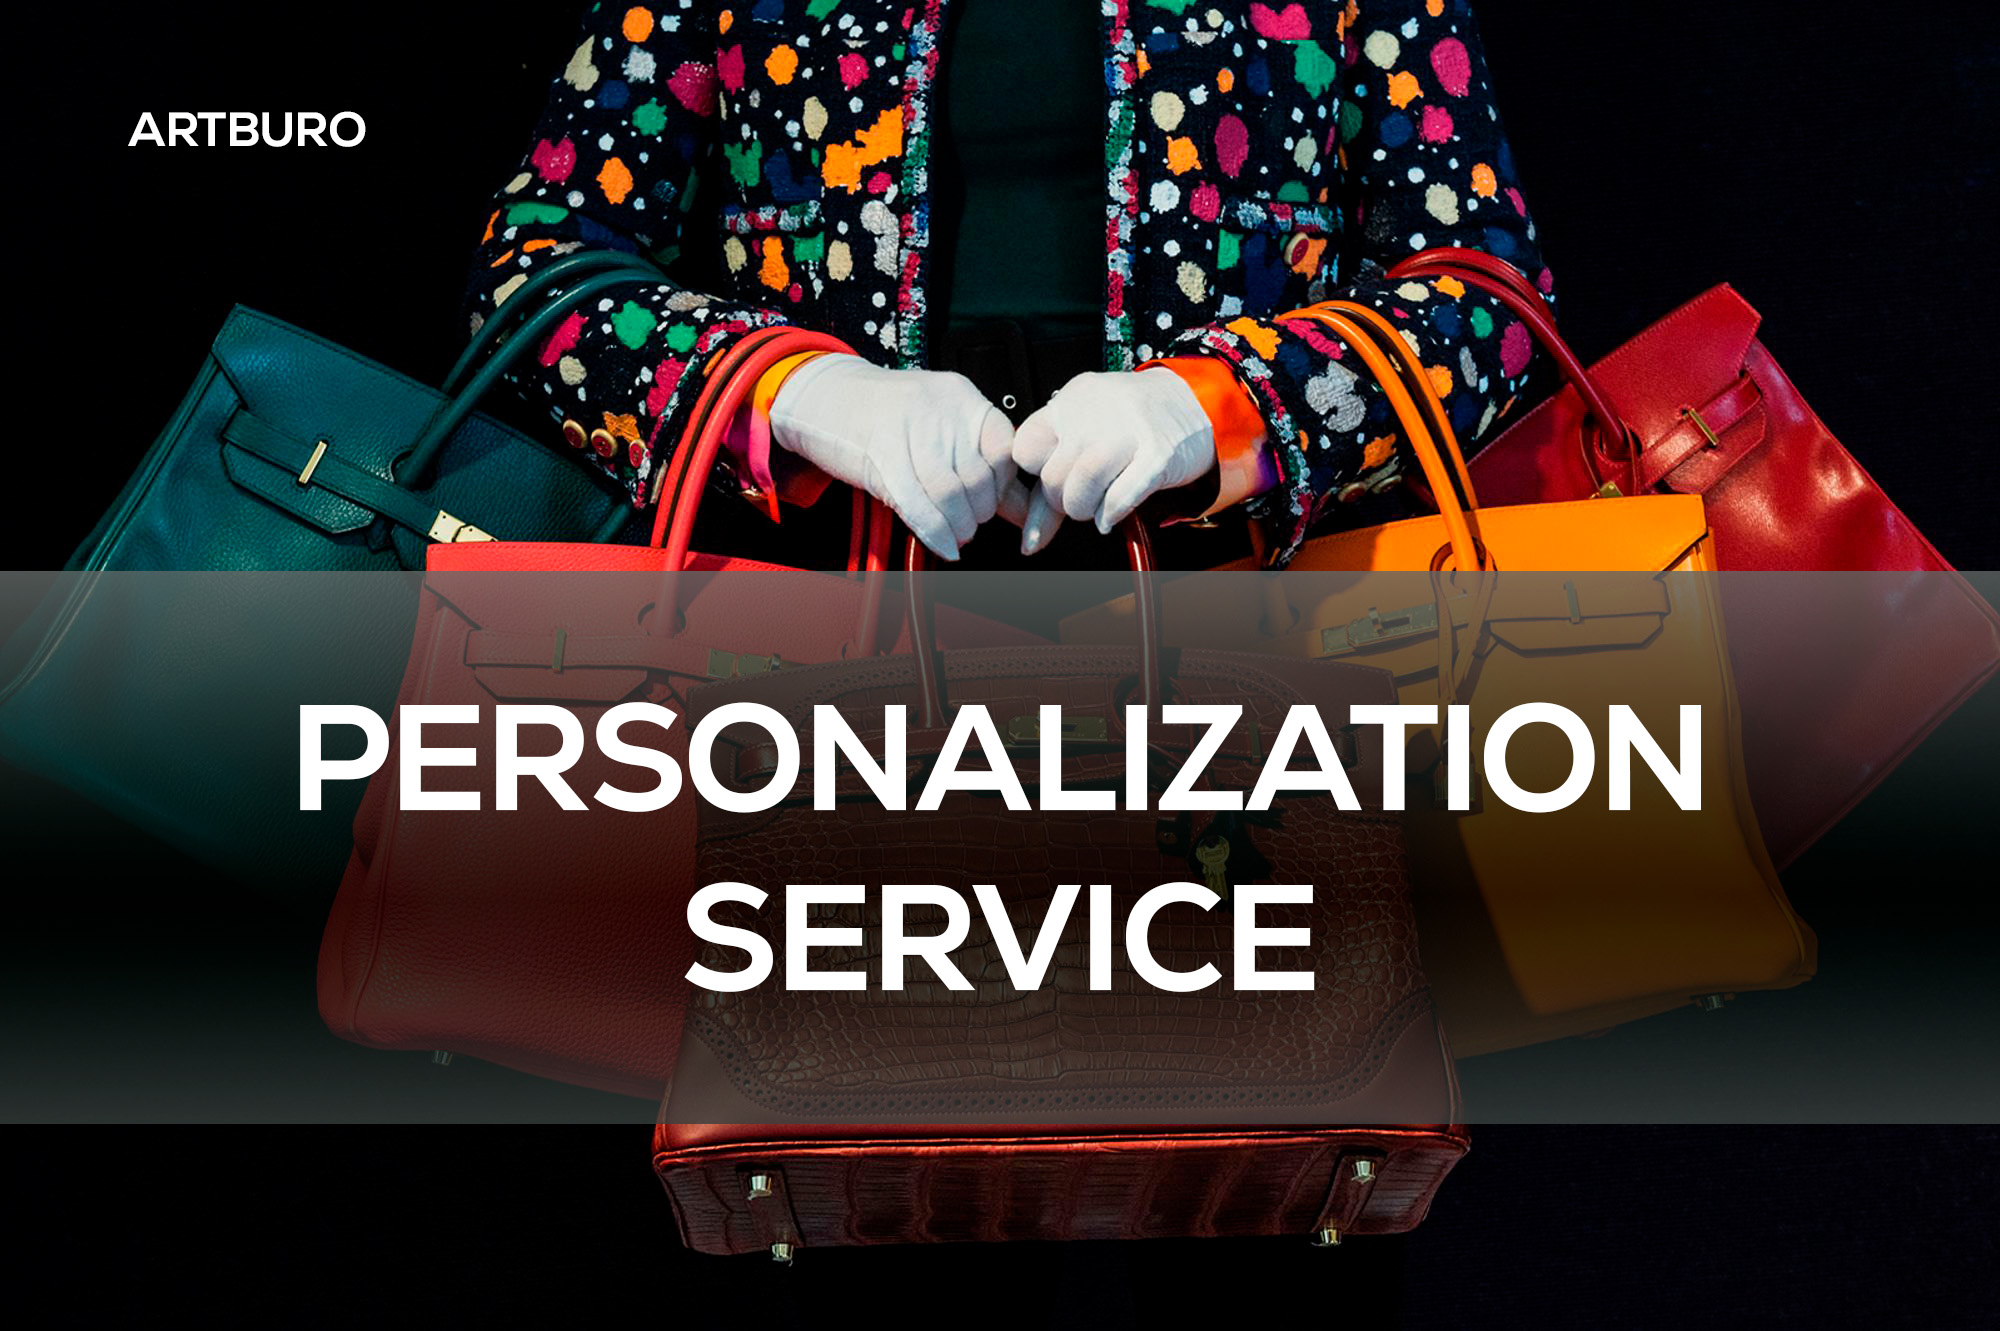 ARTBURO - Personalization Service